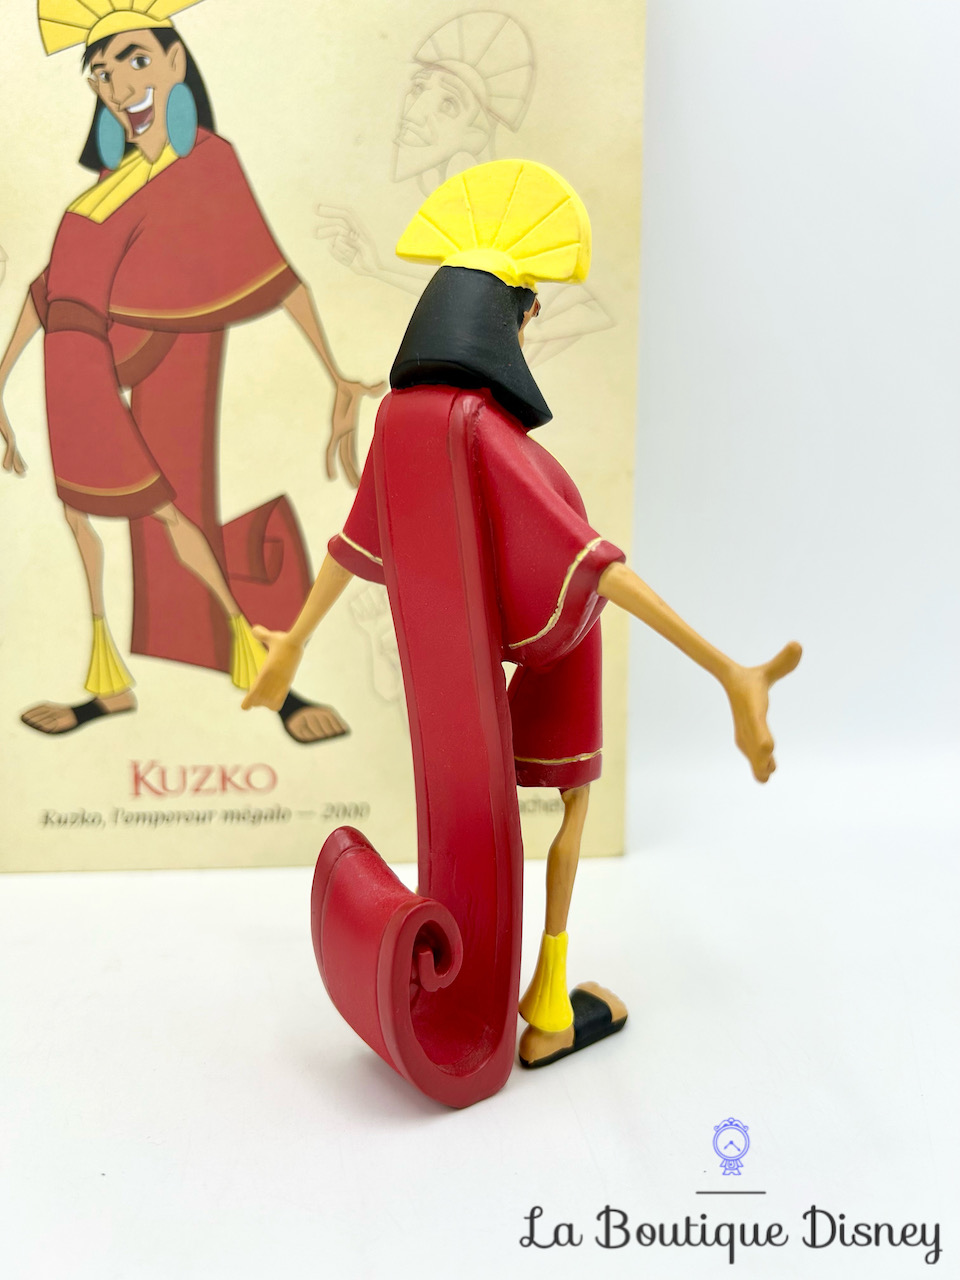 livre-figurines-de-collection-kuzko-empereur-megalo-hachette-encyclopédie-résine-4